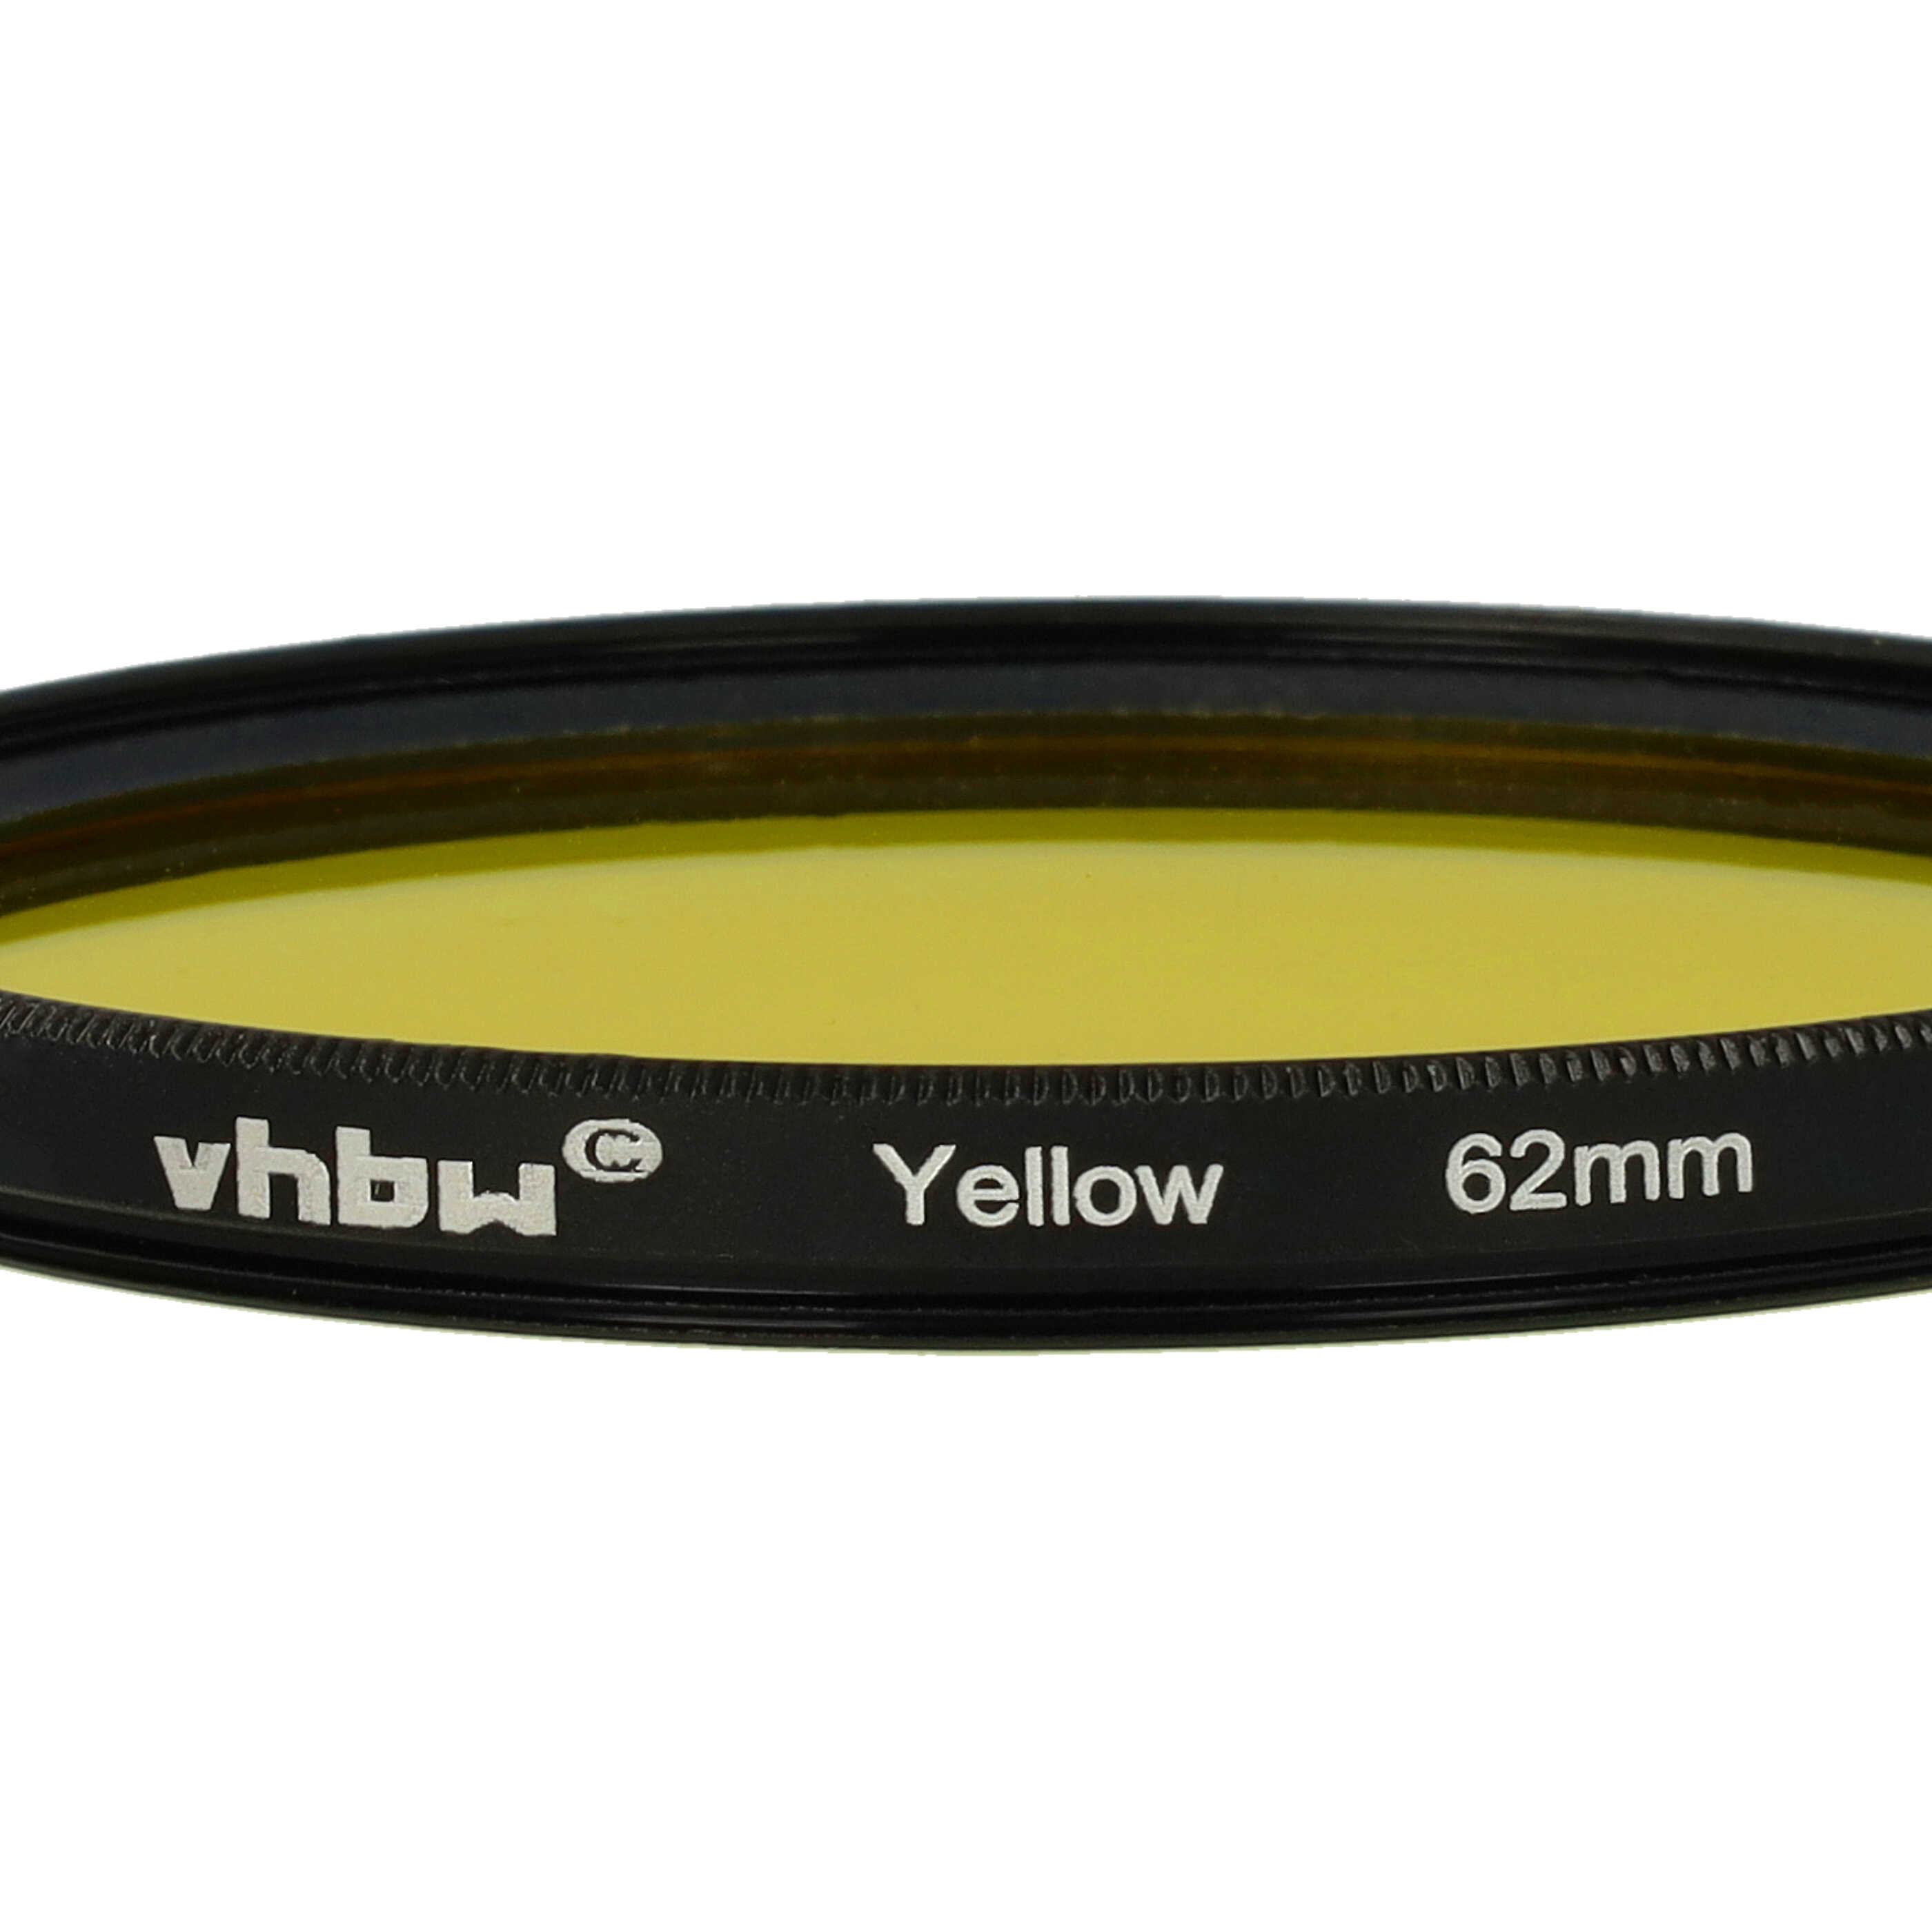 Filtro de color para objetivo de cámara con rosca de filtro de 62 mm - Filtro amarillo